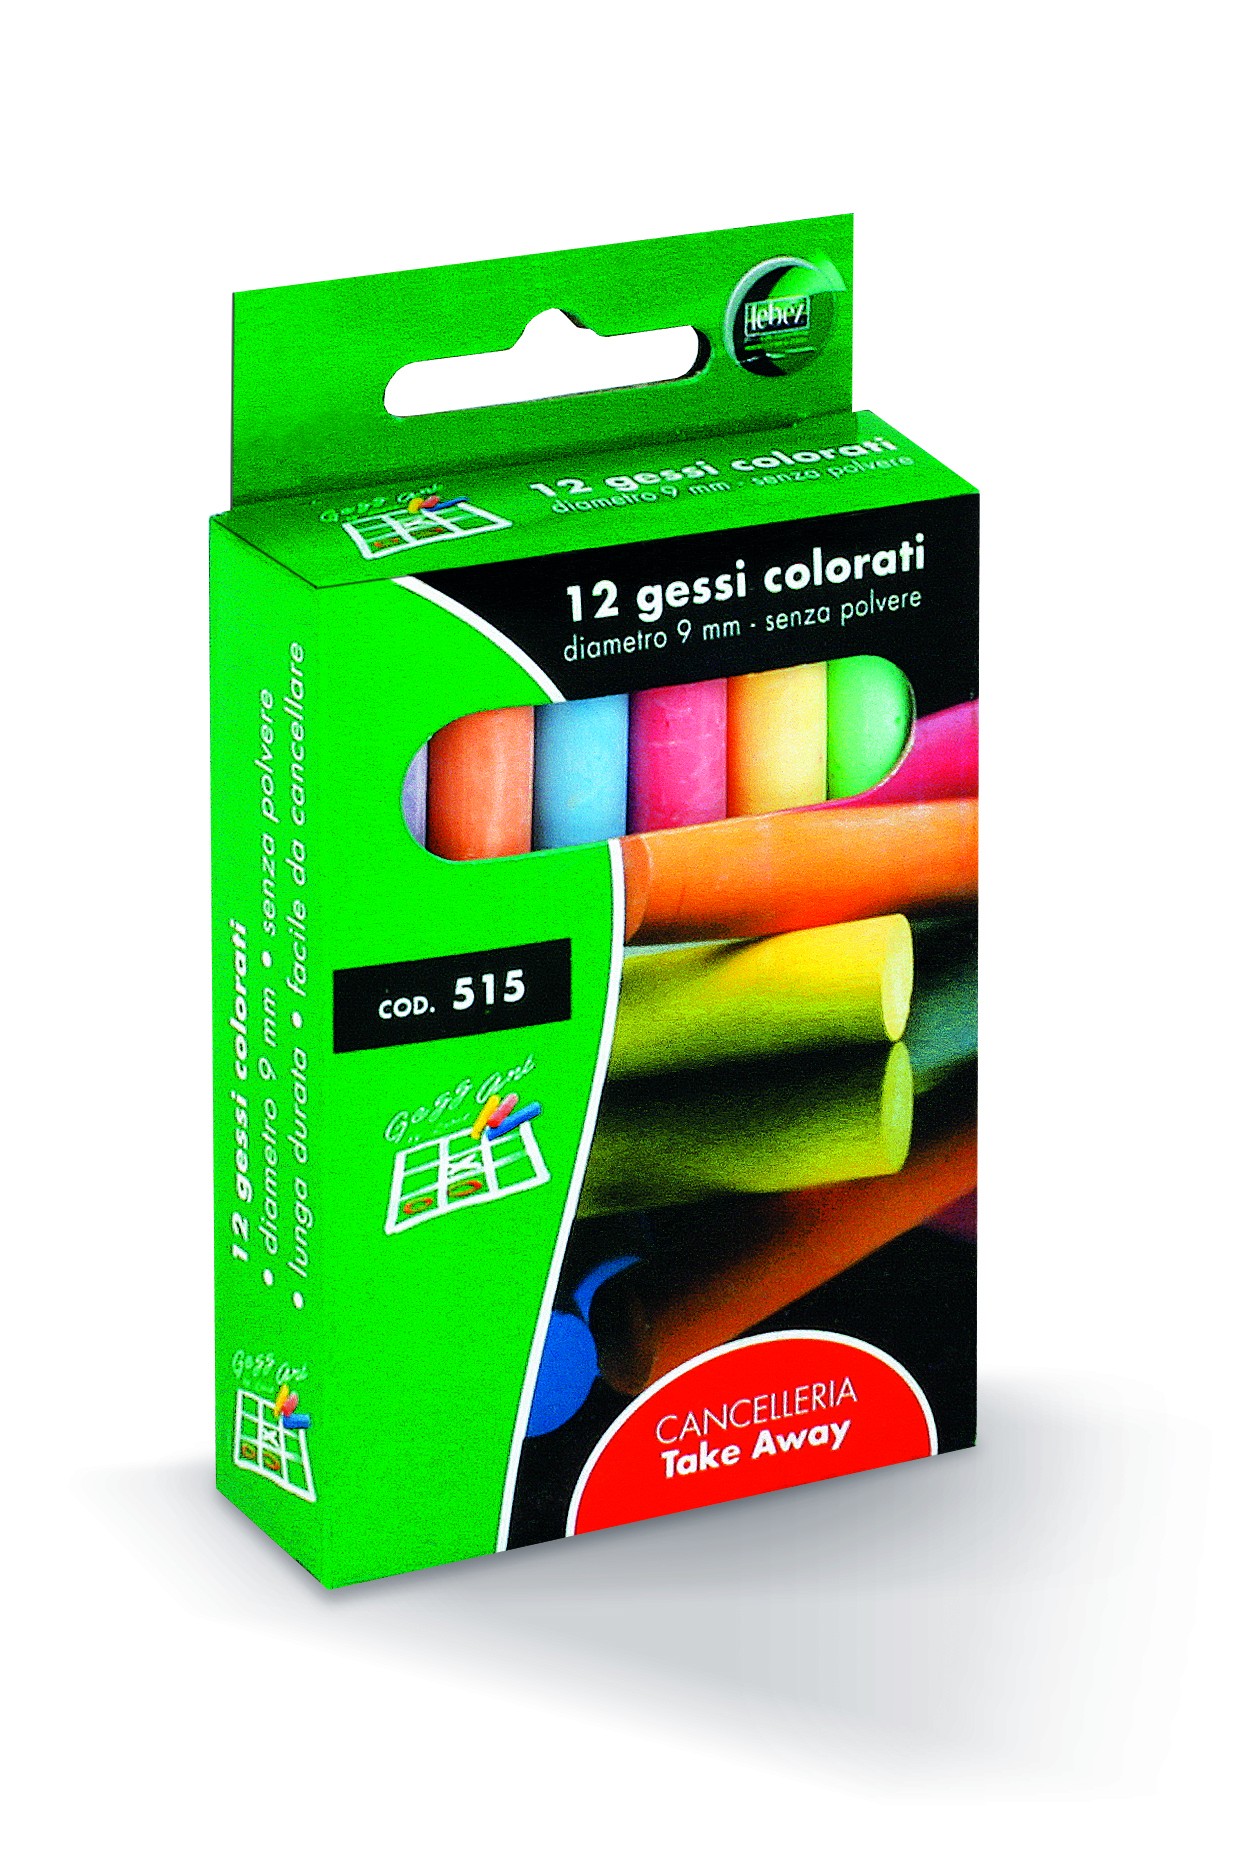 Gessi Colorati senza polvere Scatola 12 pezzi - Lebez 515